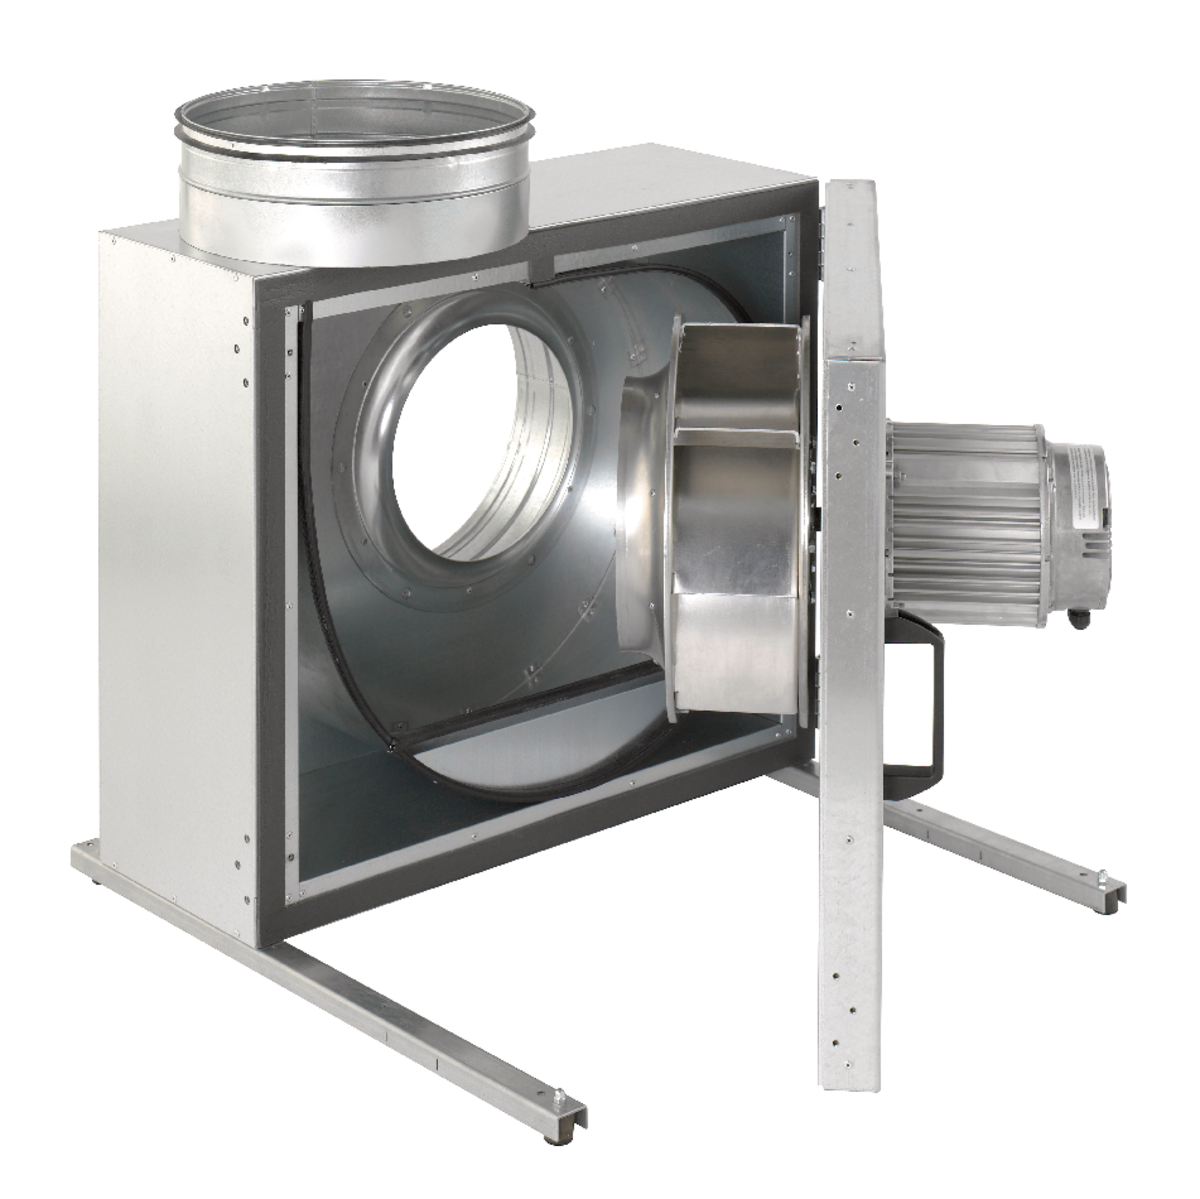 KBR - Išcentriniai ventiliatoriai - Ventiliatoriai - Produktai - Systemair